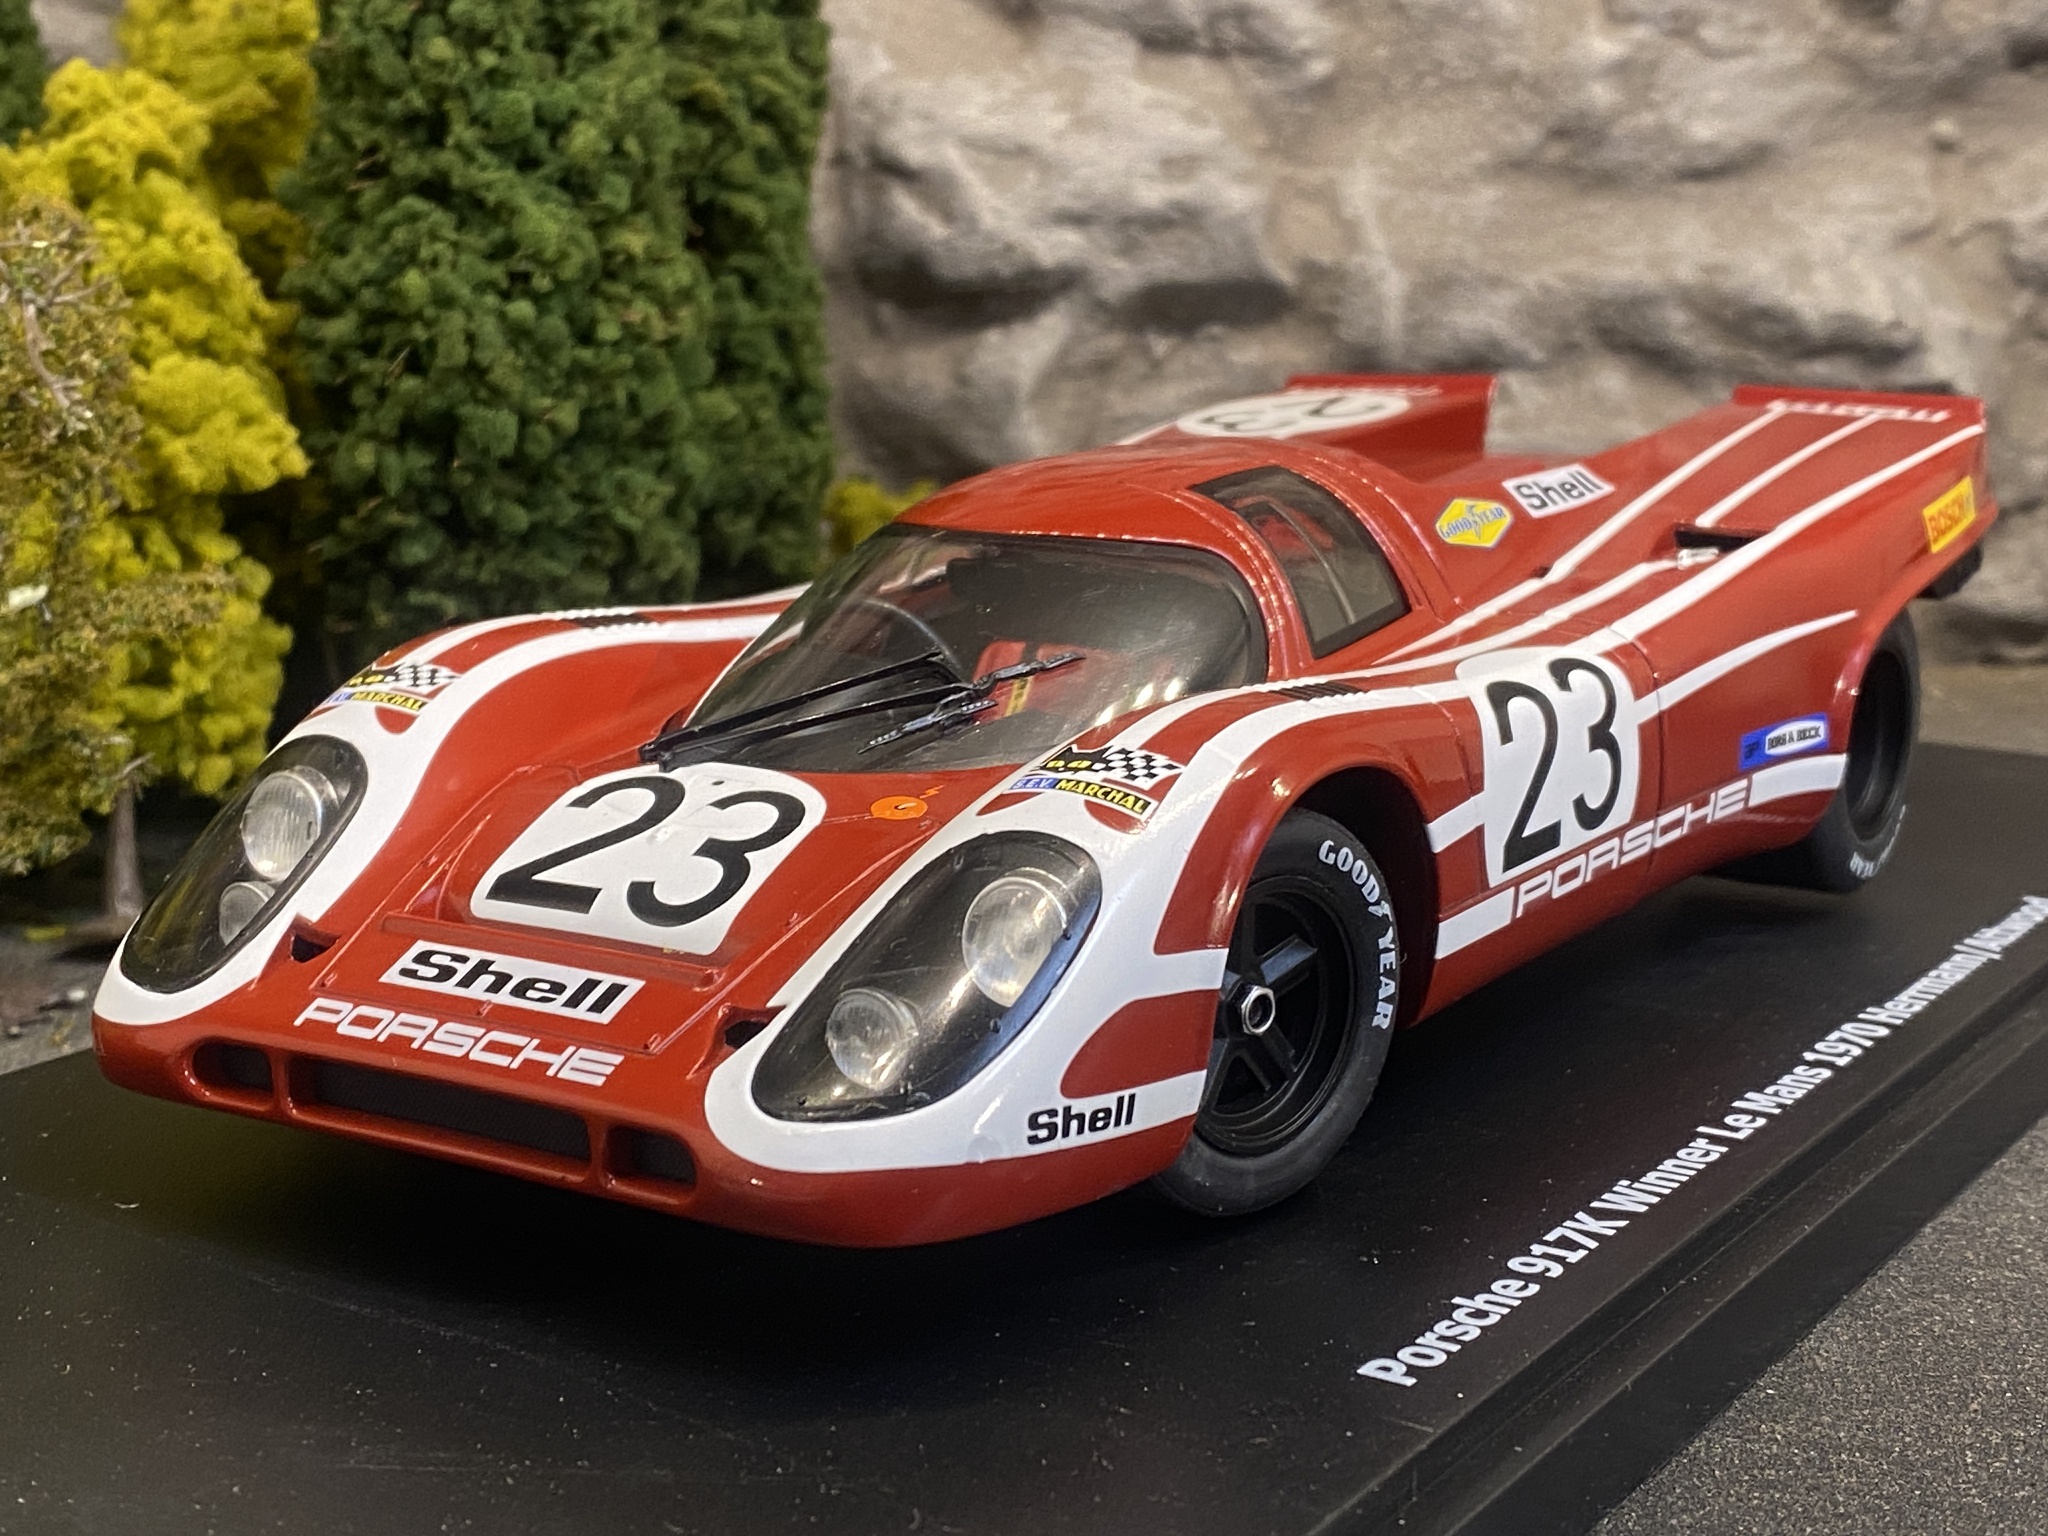 Skala 1/18 Porsche 917K Winner Le Mans 1970, Dark red fr KK-Scale